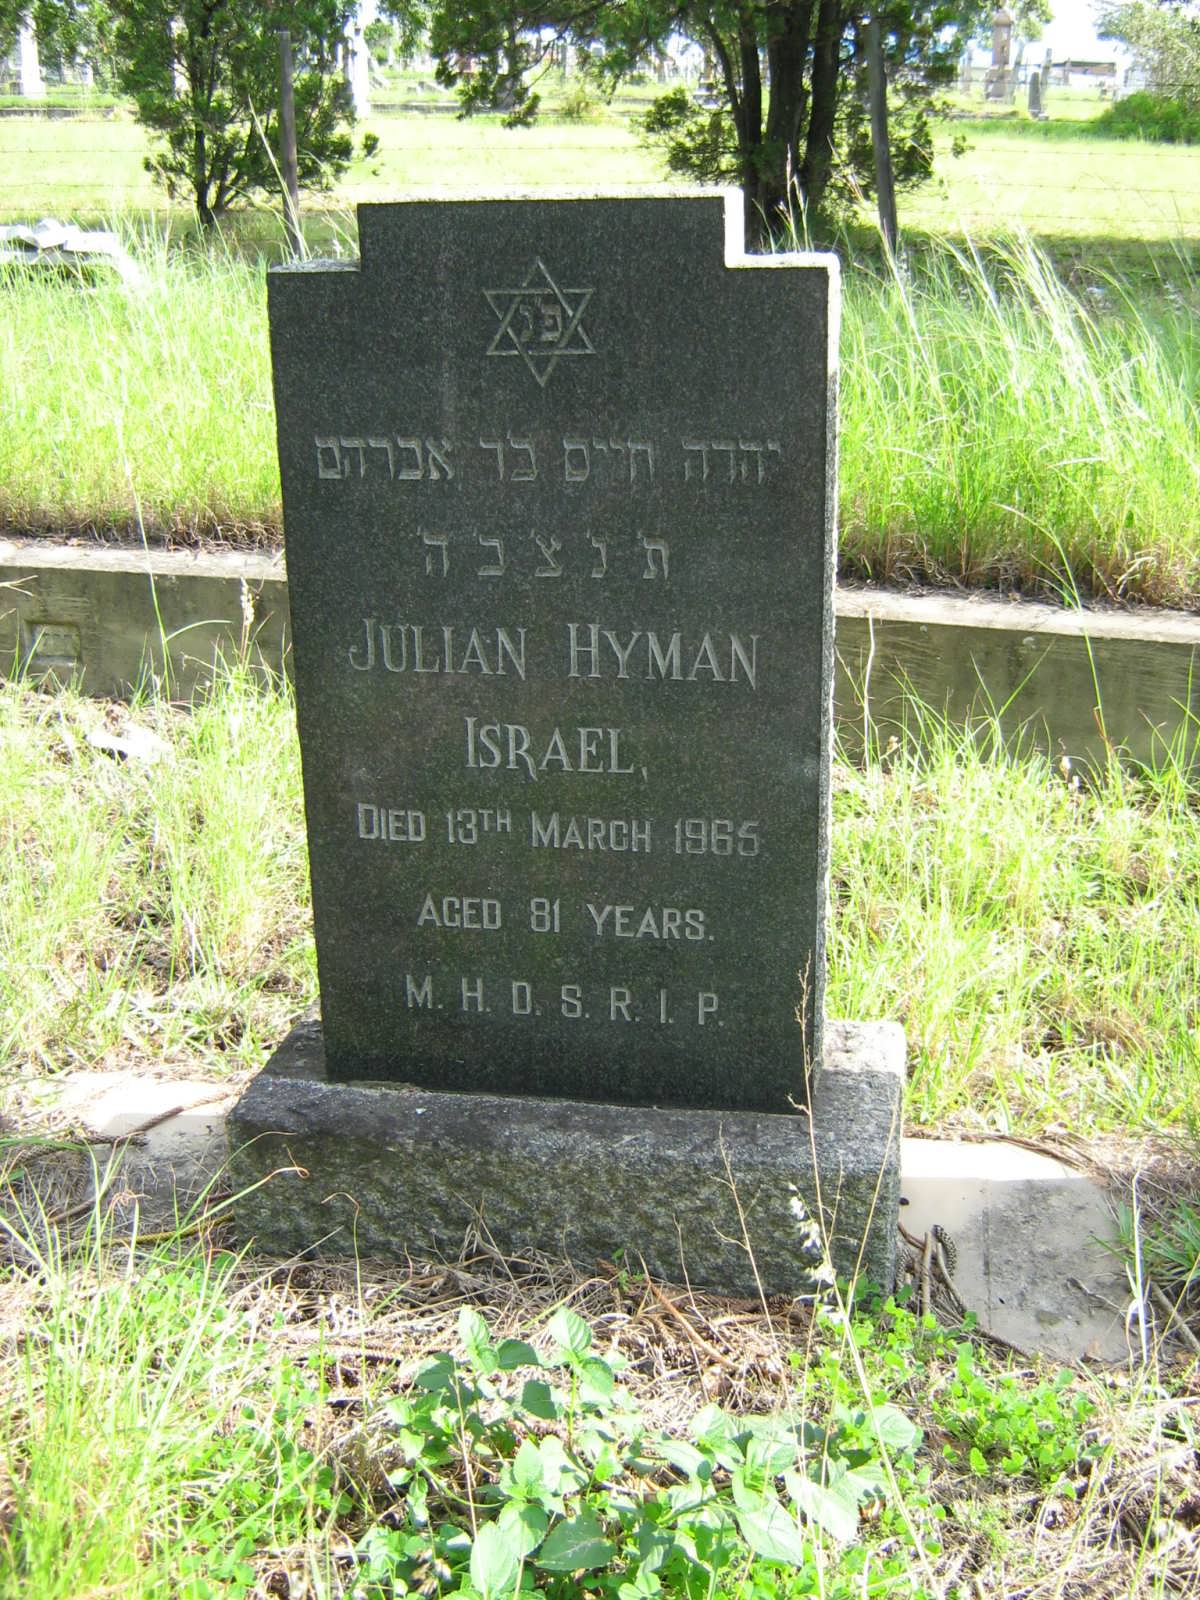 ISRAEL Julian Hyman -1965